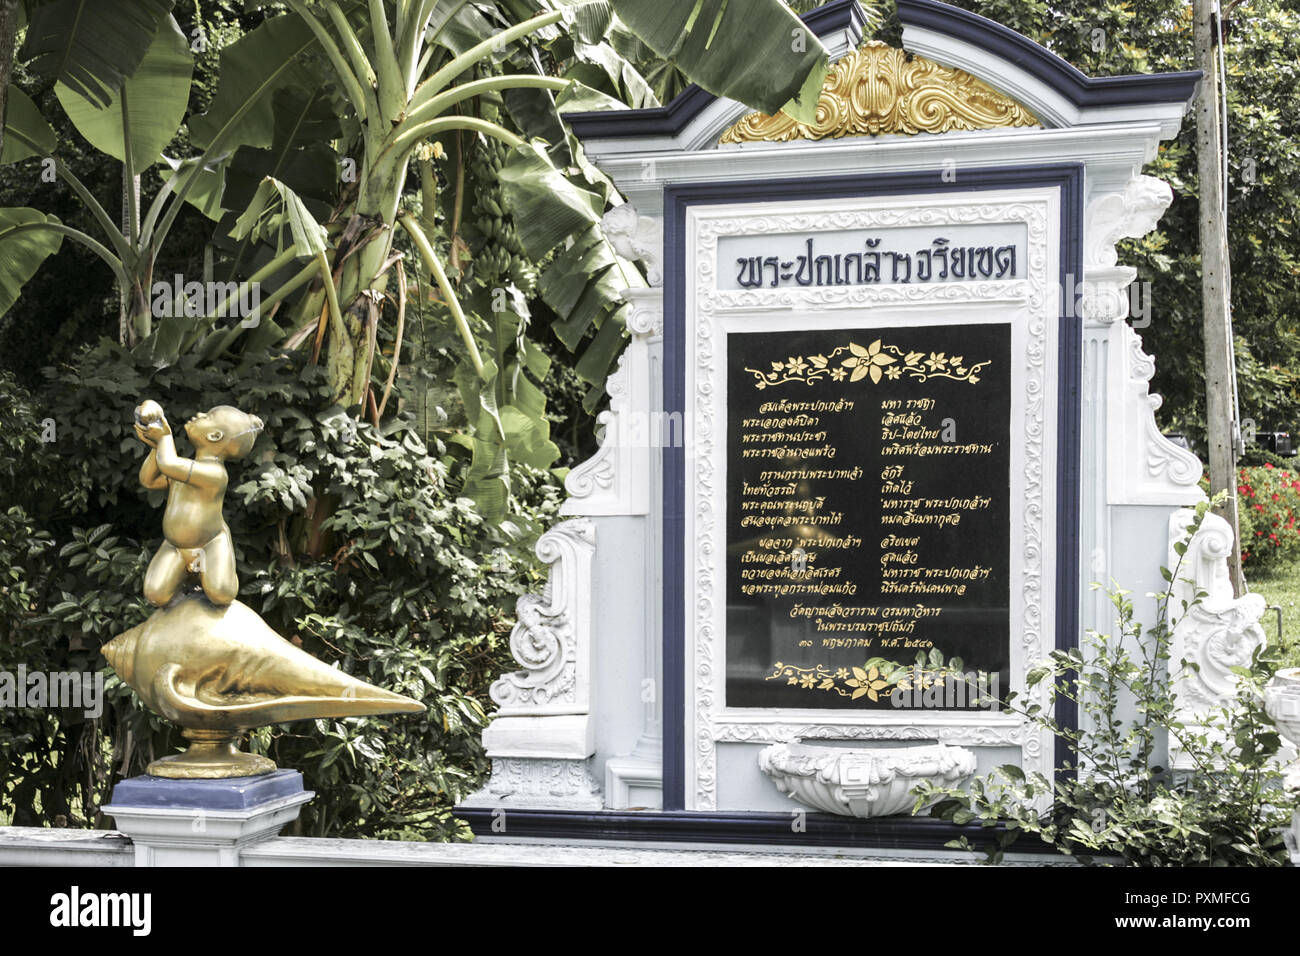 Thailand Siam Wat Yansangwararam Park Kultur Tradition Konzept Glaube Religion Buddhismus asiatisch Buddha buddhistisch Geschichte geschichtlich heili Stock Photo